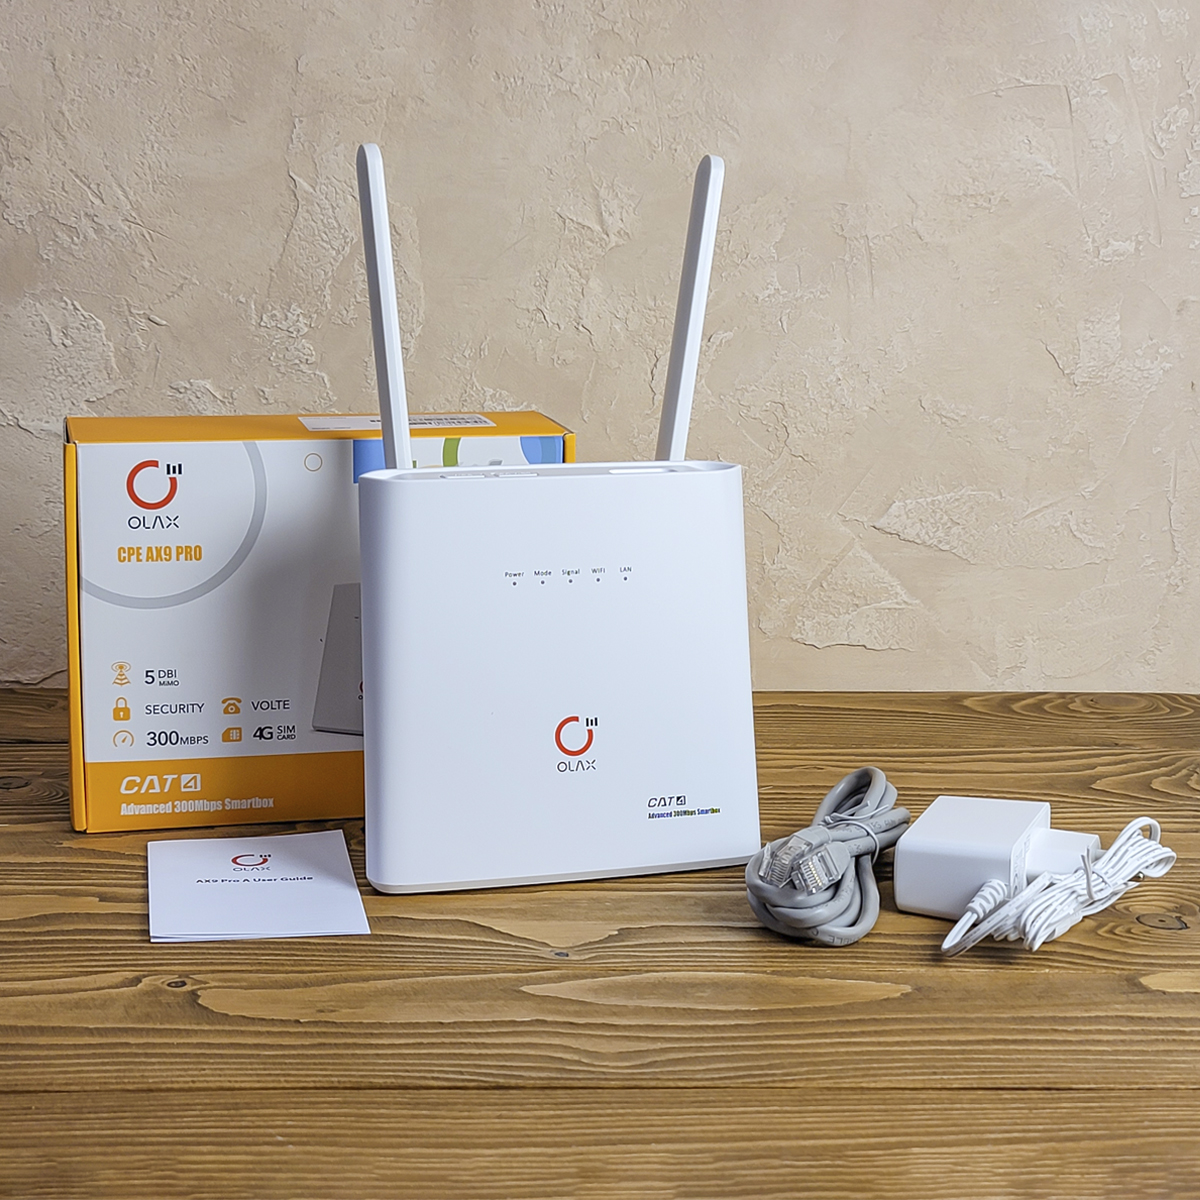  4G LTE Wi-Fi роутер Olax AX9 Pro A  купиь на marketnet.com.ua. Быстрая доставка по Украине. Вид спереди. Комплектация: роутер, 2 антенны, блок питания, кабель подключения, инструкция